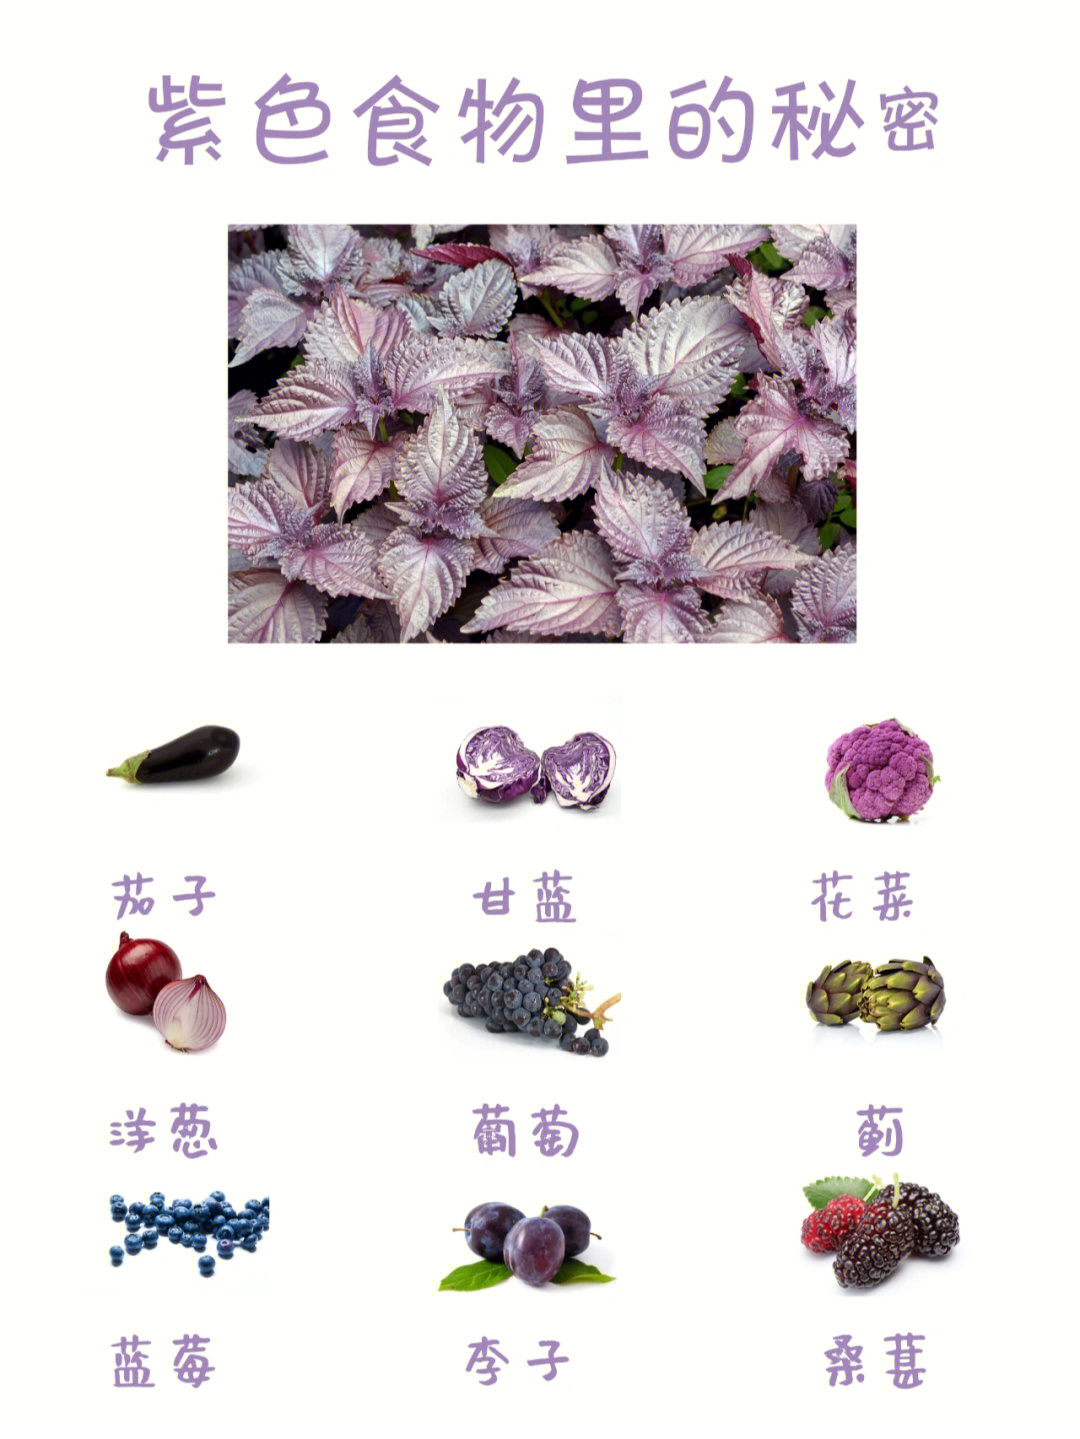 紫苏是药食两用的食材,有多种功效,在我国已经有两千多年的种植历史